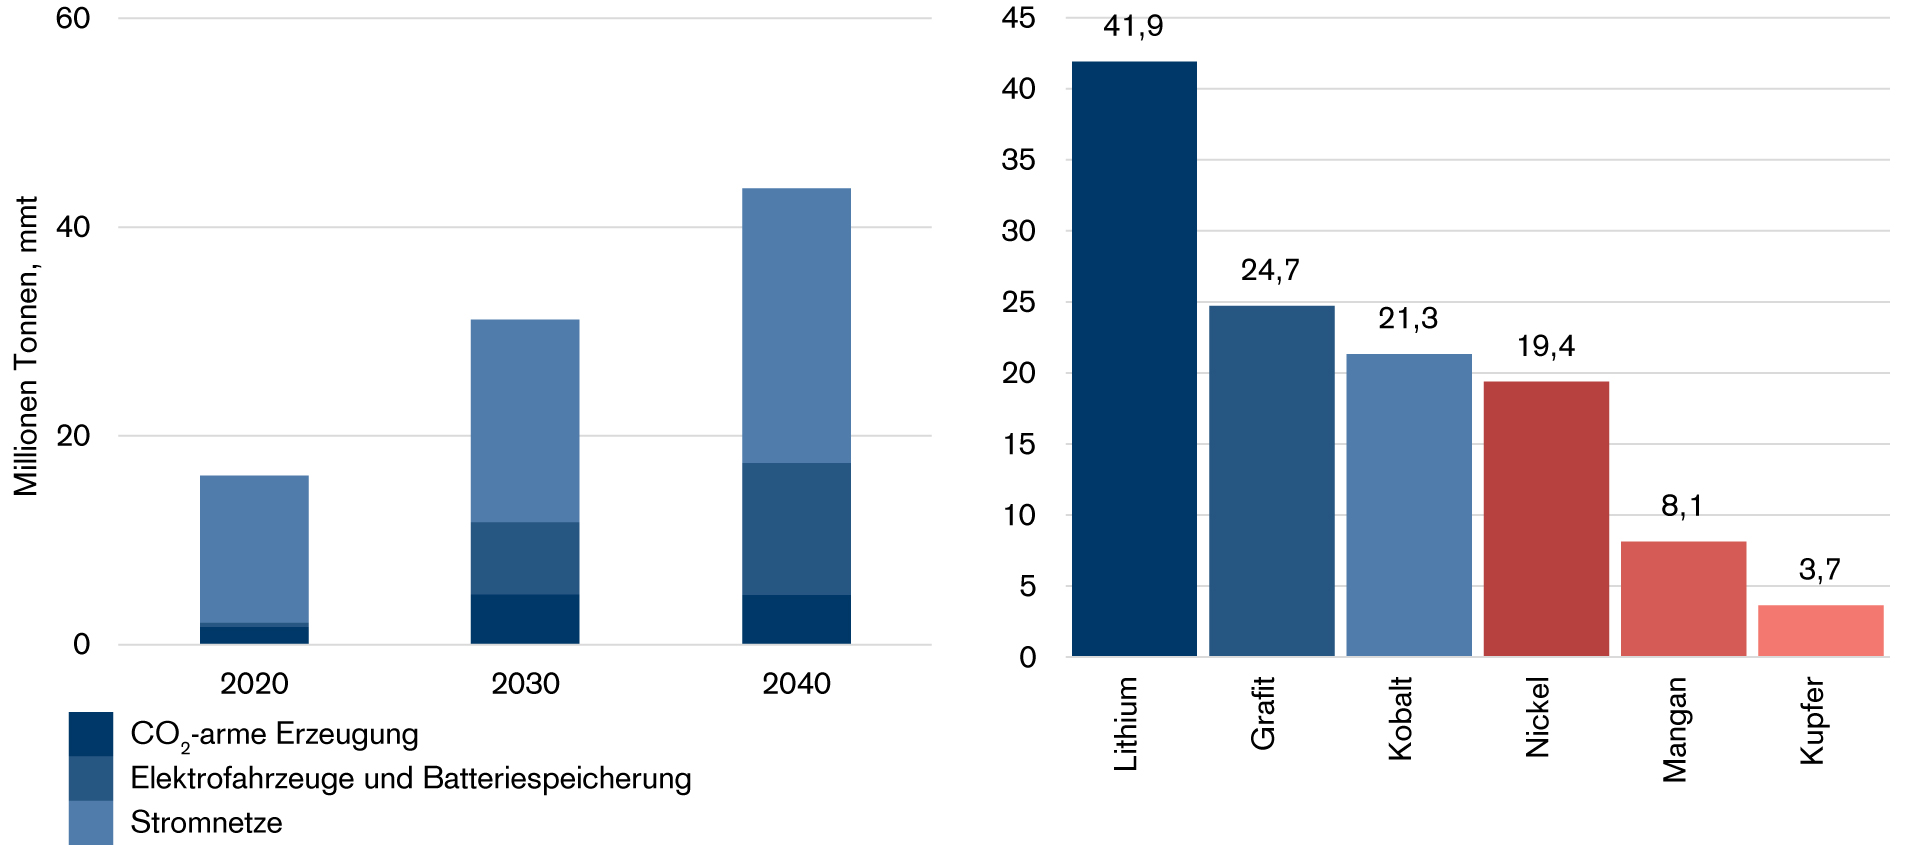 Abbildung 1: Wachstum der Nachfrage nach ausgewählten Mineralien im Sustainable Development Scenario (SDS) der IEA, 2040 gegenüber 2020. Links absolut (Tonnen), rechts indexiert auf das Jahr 2020 = 1; mmt = Millionen Tonnen. Quelle: IEA.